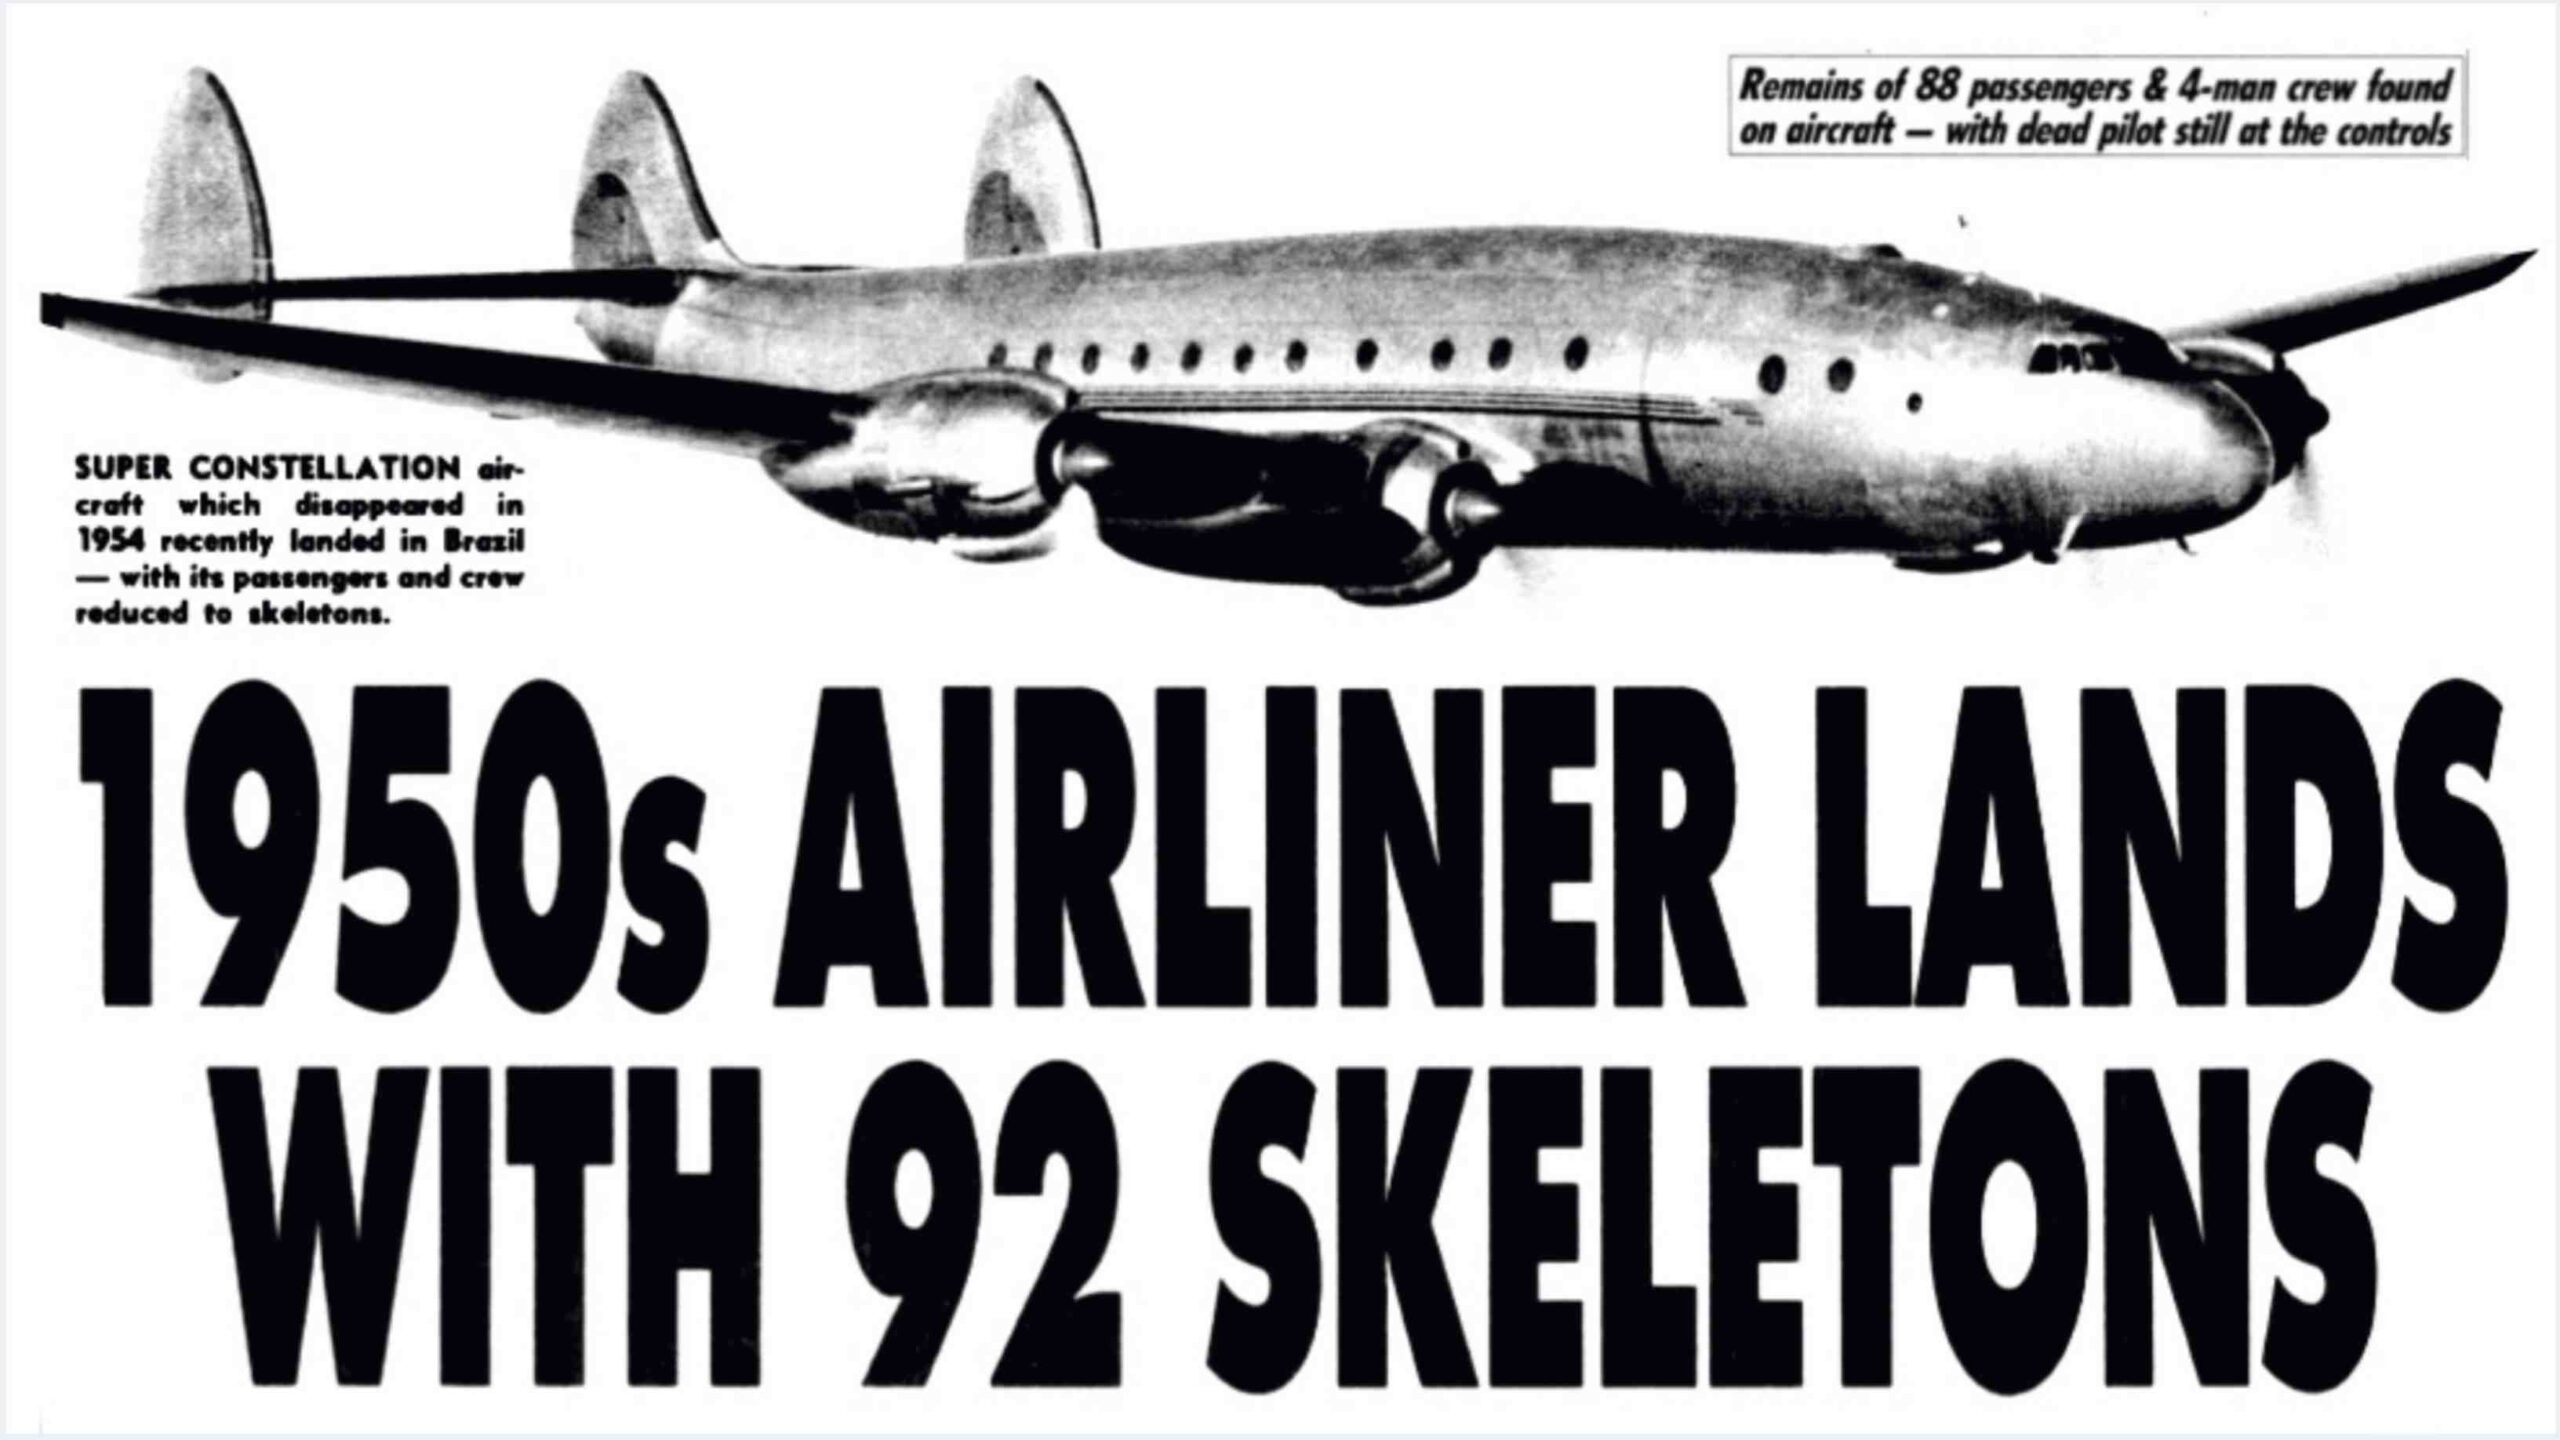 Santiago Fluch 513: De Fliger, verluer fir 35 Joer, gelant mat 92 Skeletter u Bord! 1